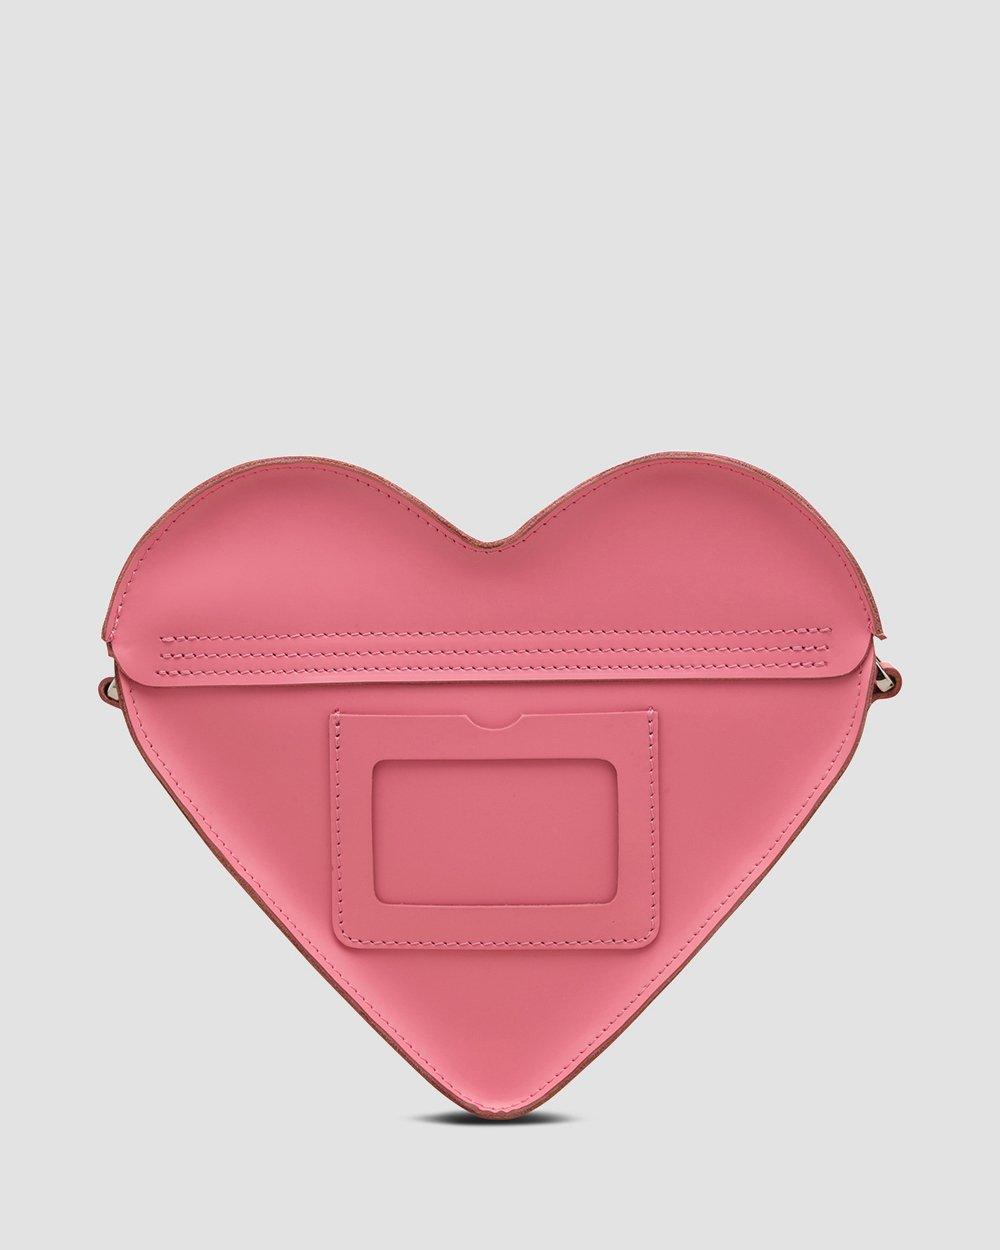 Sequin Heart Leather Satchel in Geranium Pink